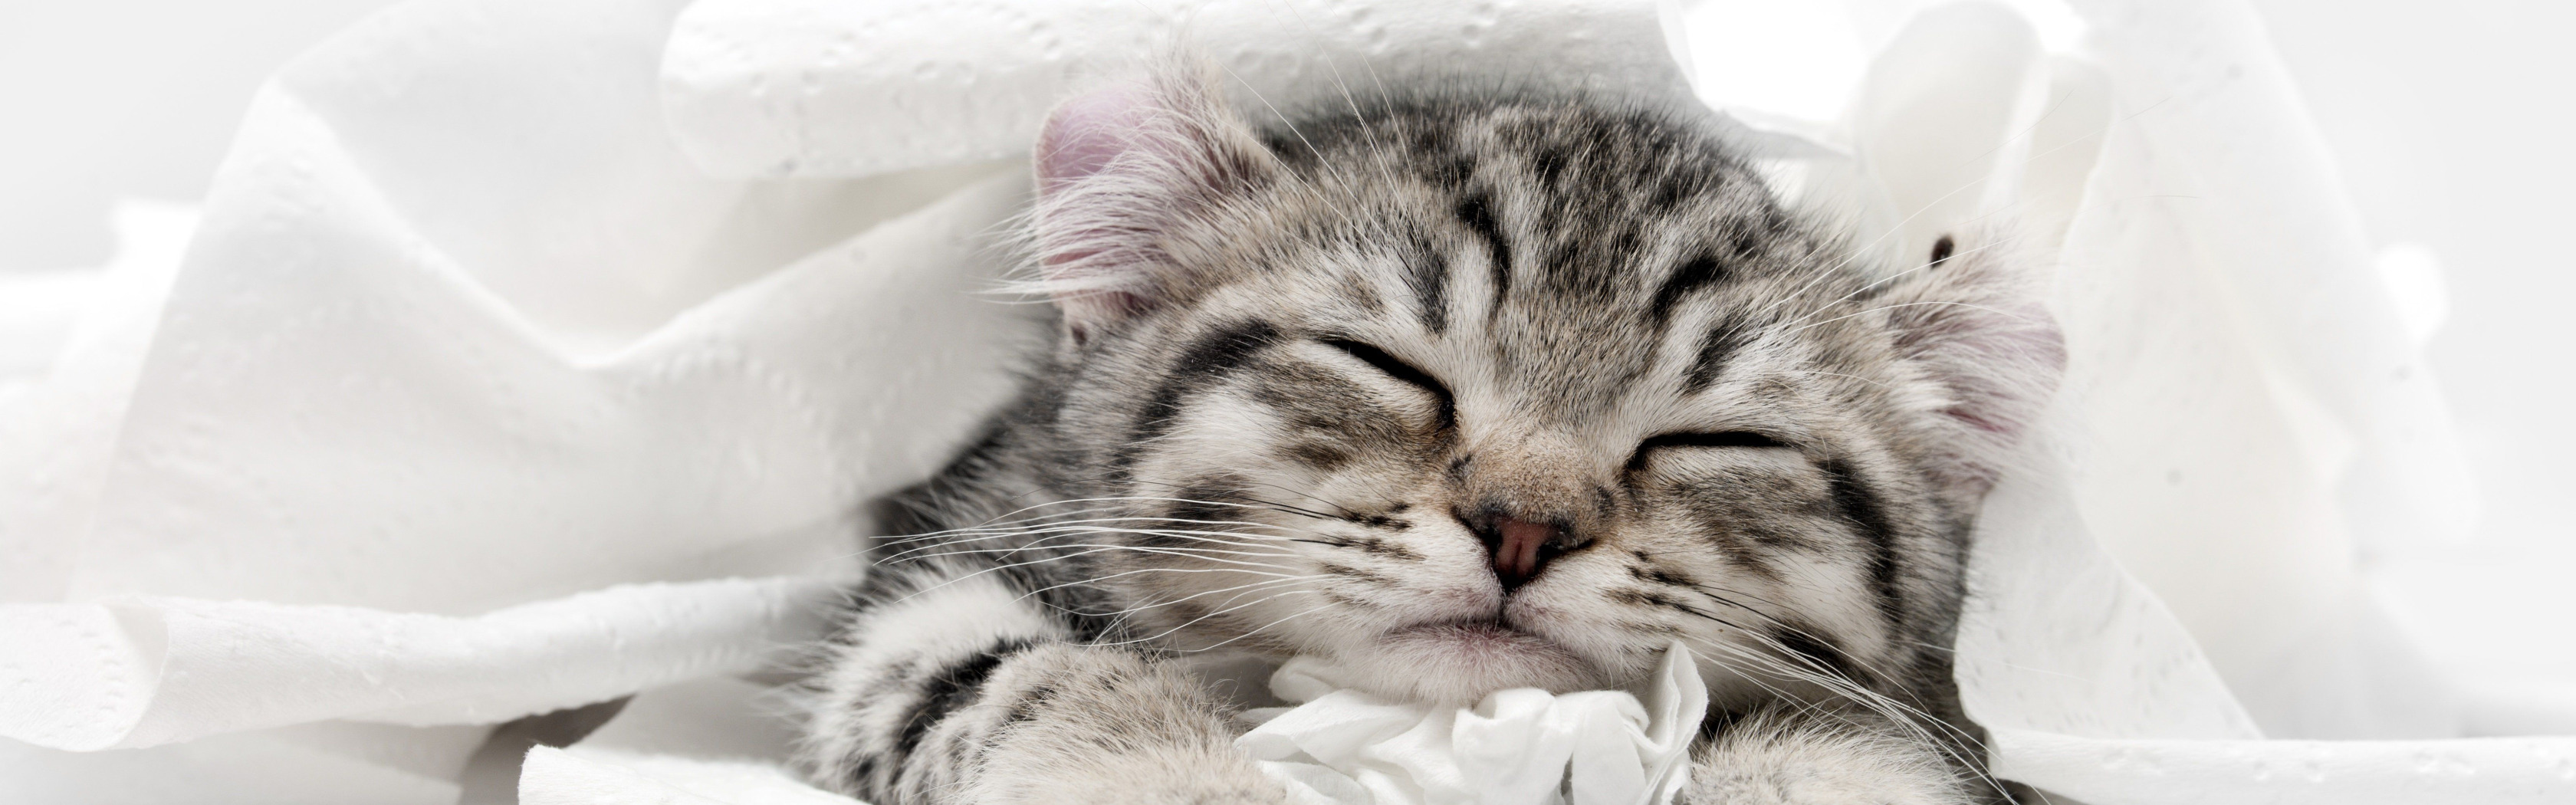 Котята миллер. Спящий серый котенок. Серый котенок во сне. Баннер с серыми котятами. К чему снится серый котенок.